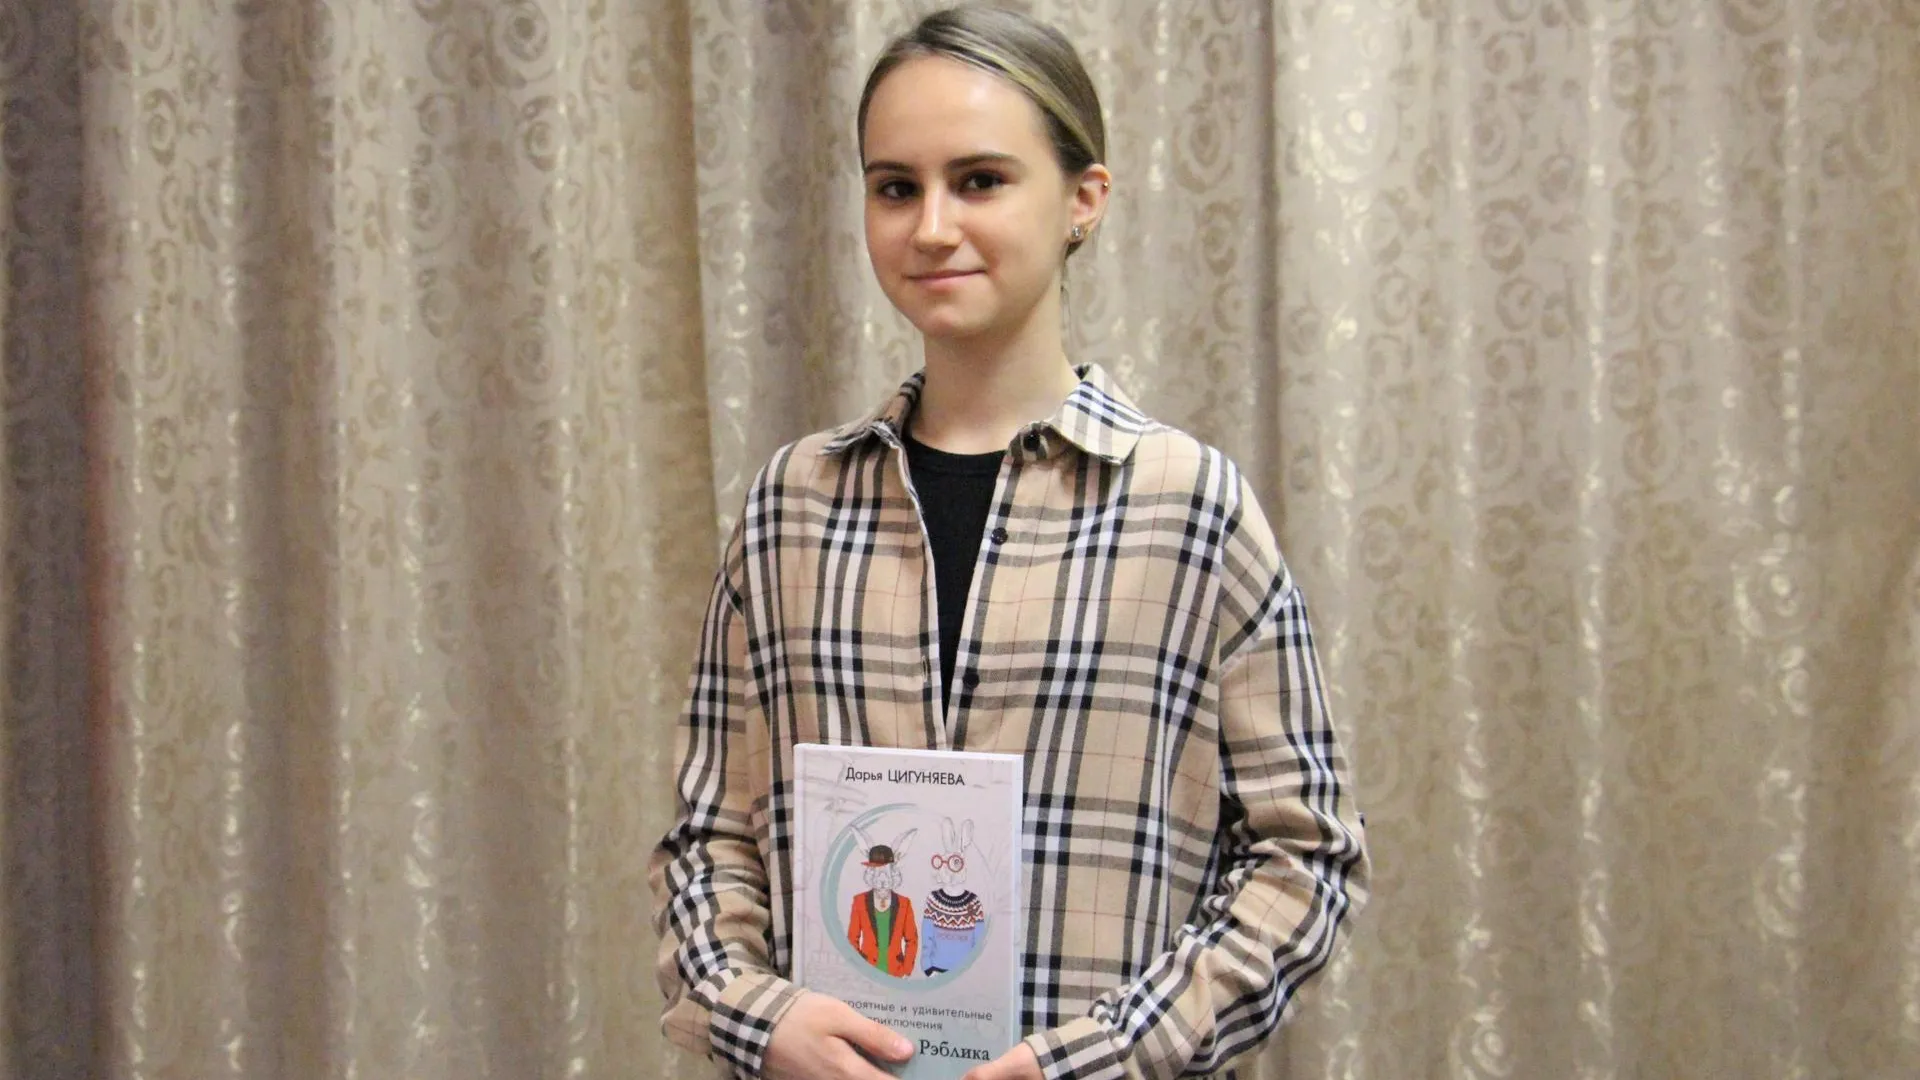 Приключения друзей‑кроликов: восьмиклассница Дарья Цигуняева о своей книге и ее замысле